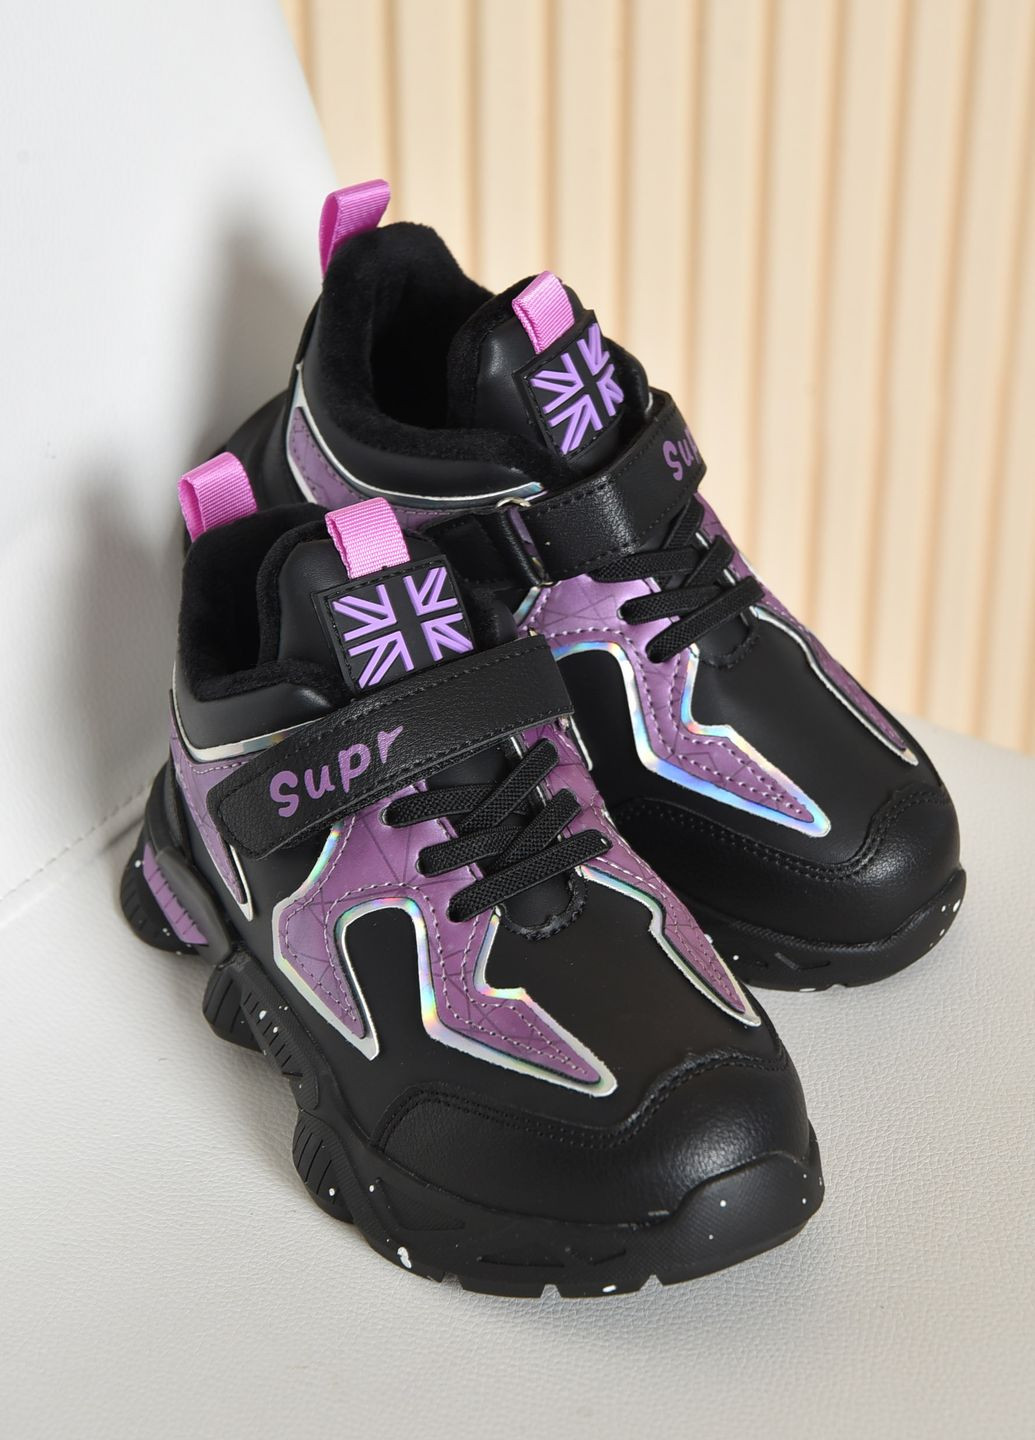 Черные демисезонные кроссовки детские для девочки демисезонные черного цвета с фиолетовыми вставками Let's Shop